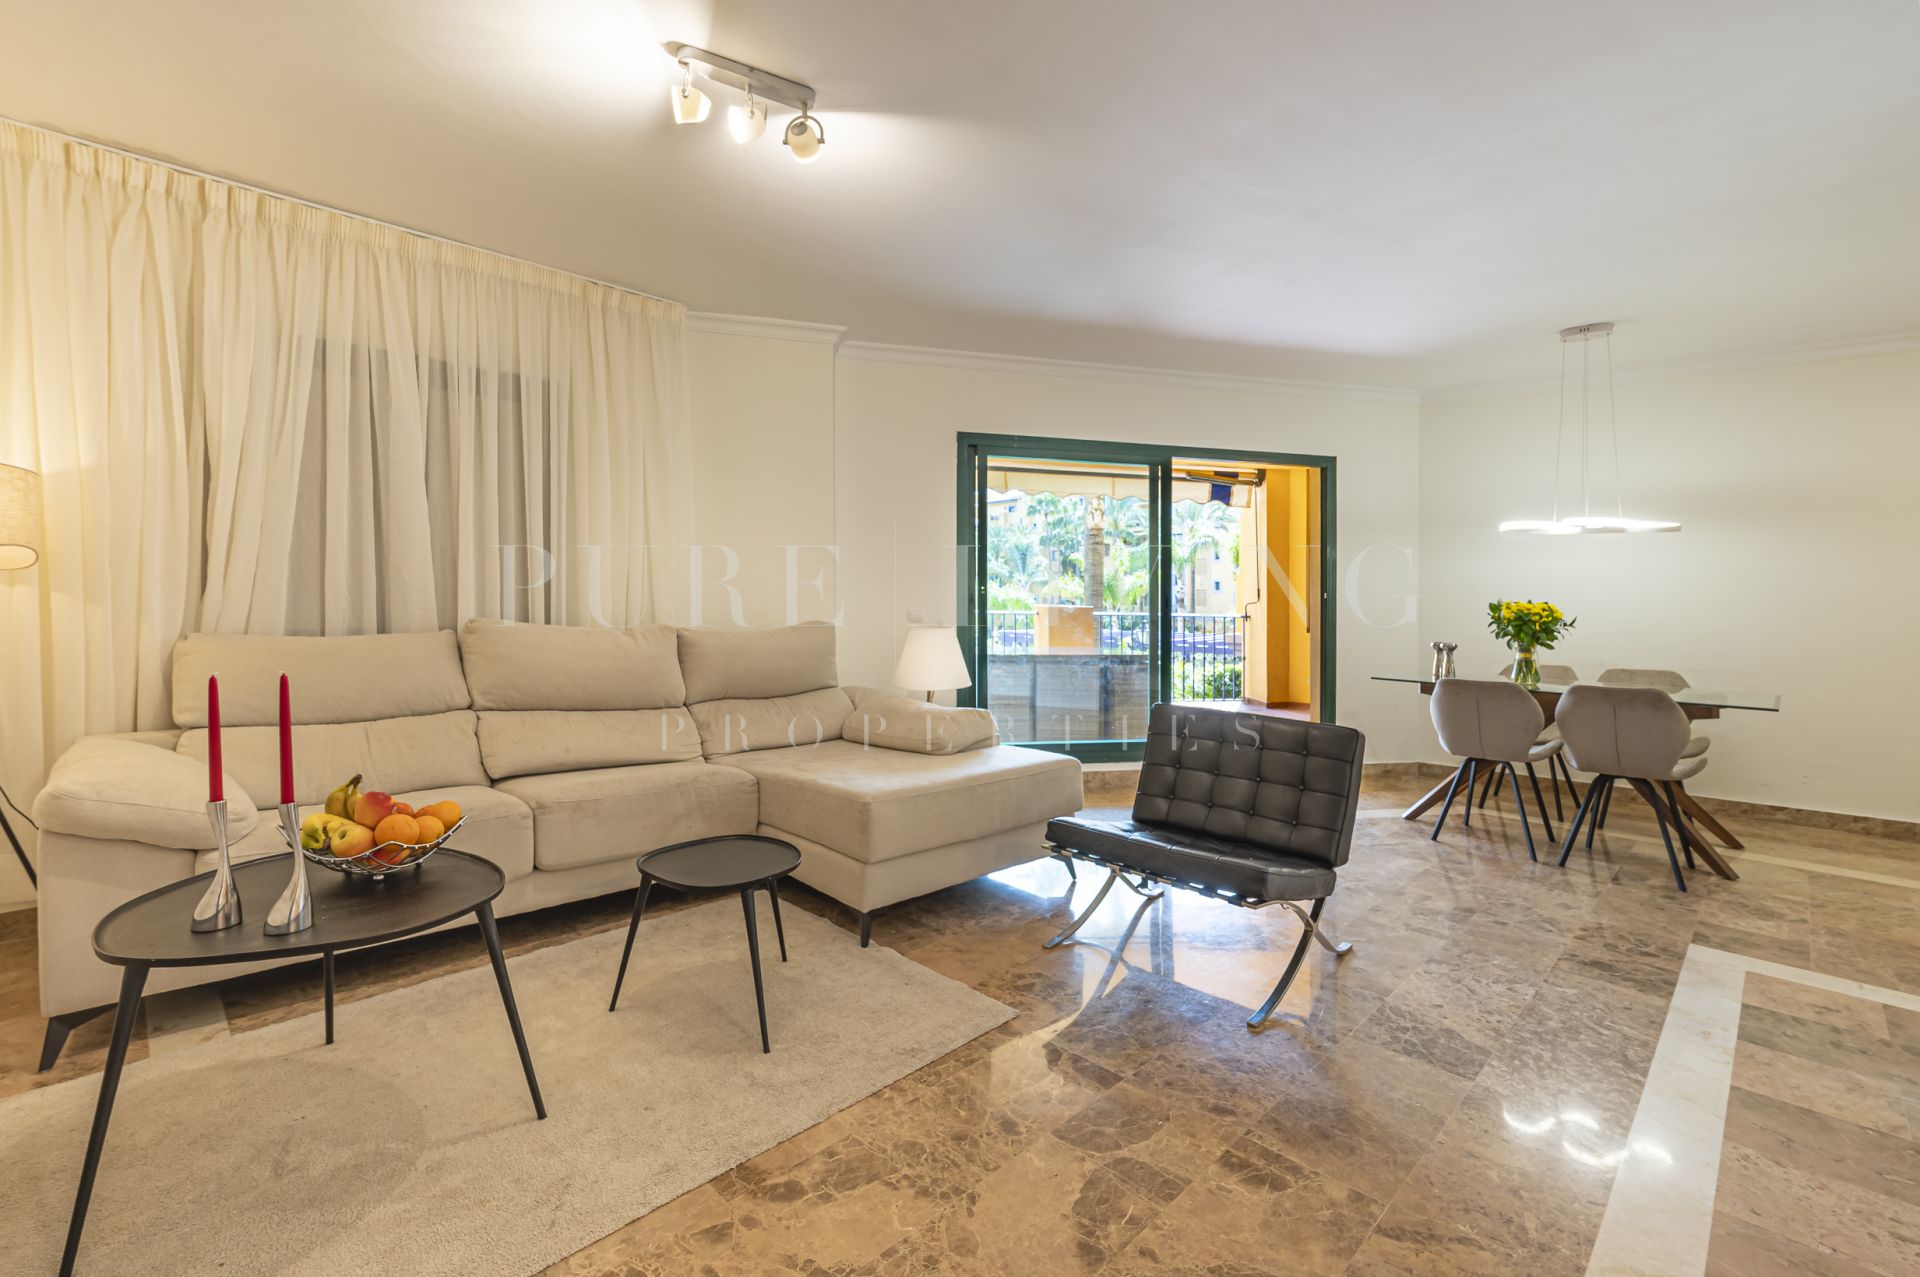 Impresionante apartamento de cuatro dormitorios situado en una ubicación privilegiada en Cortijo Blanco, San Pedro de Alcántara.